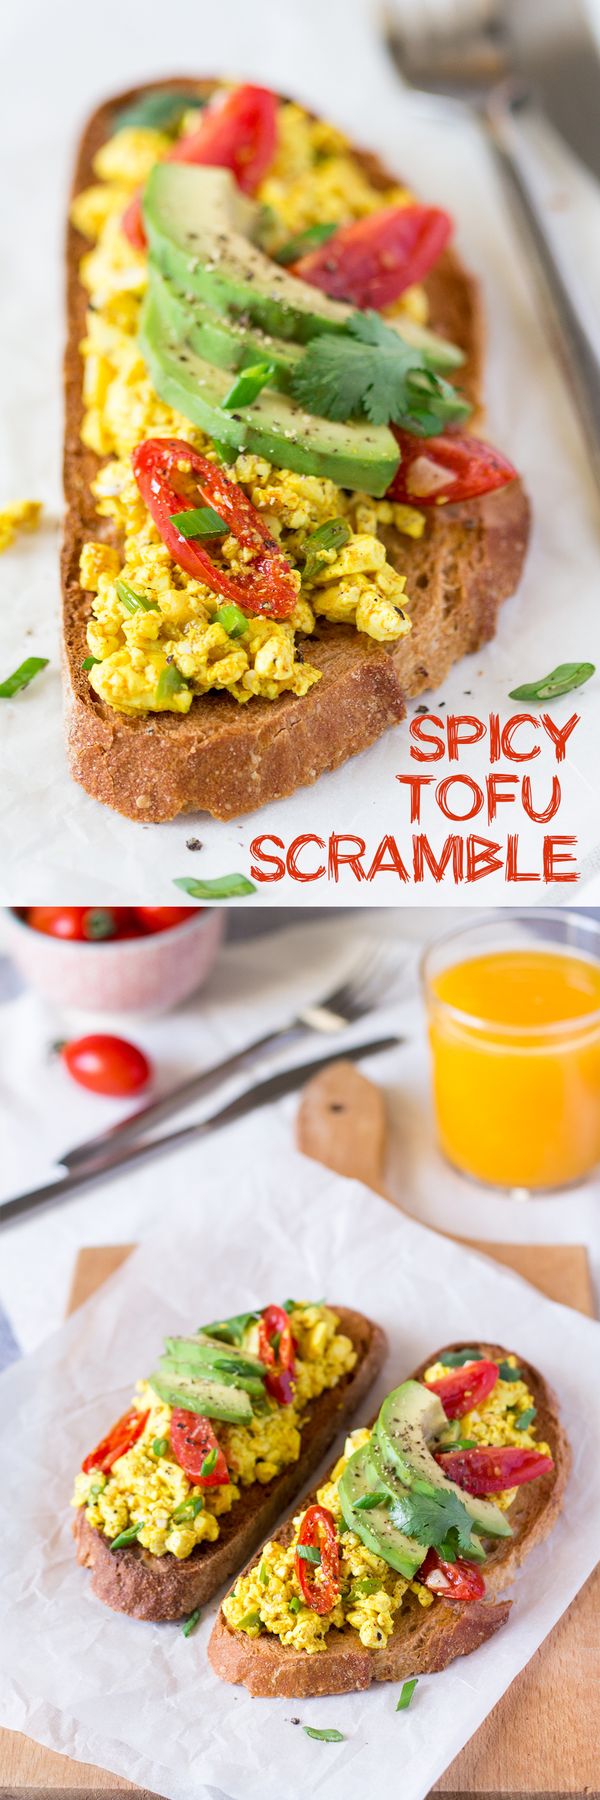 Spicy tofu scramble